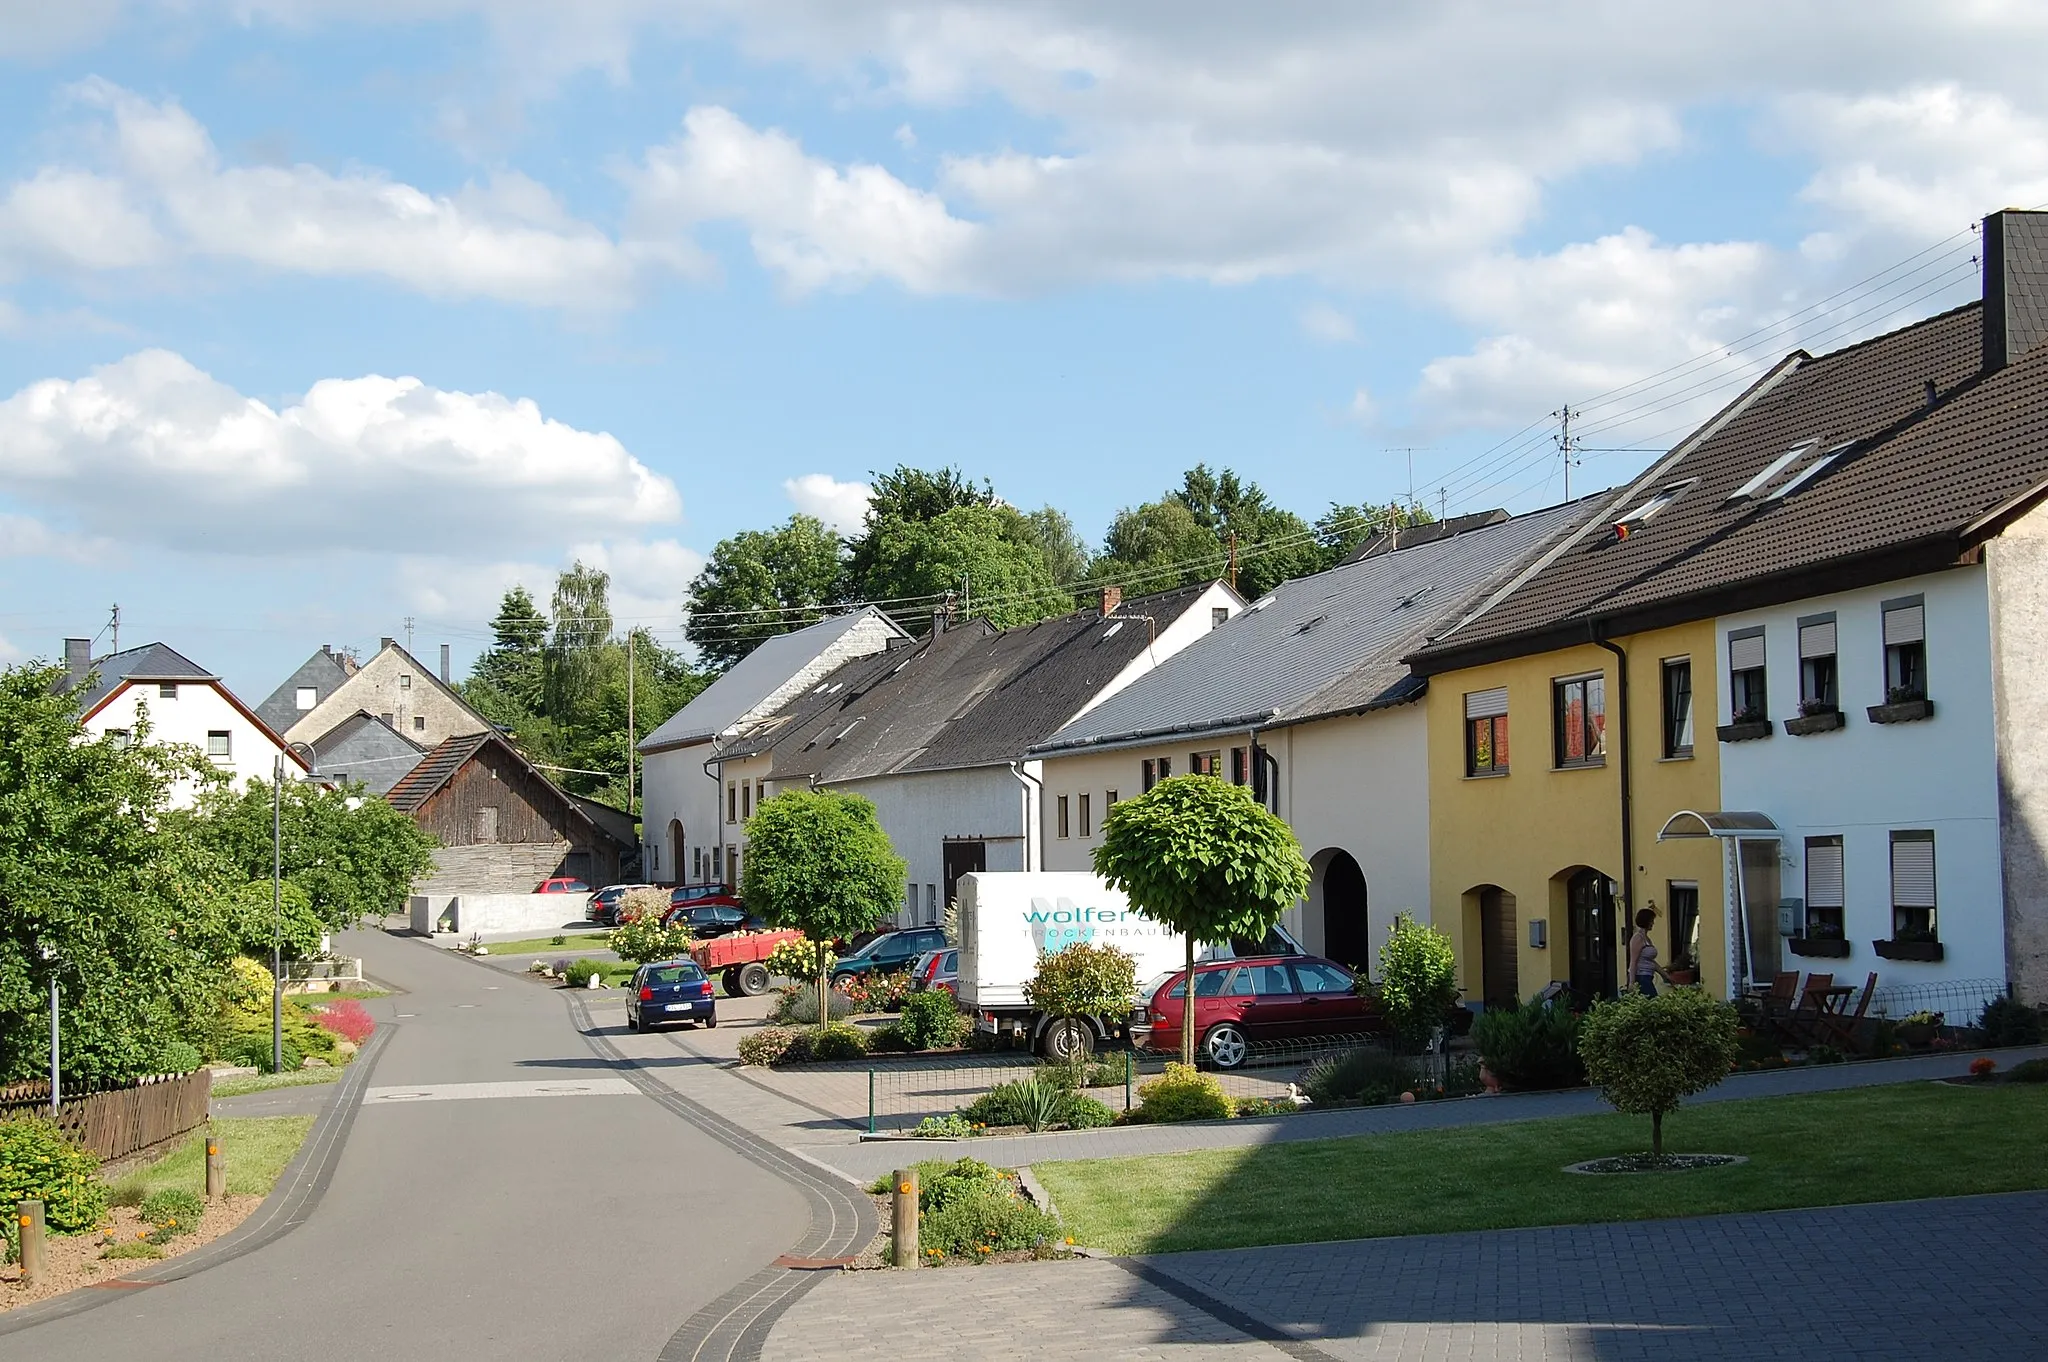 Photo showing: Village Immert in the Hunsrück landscape, Germany